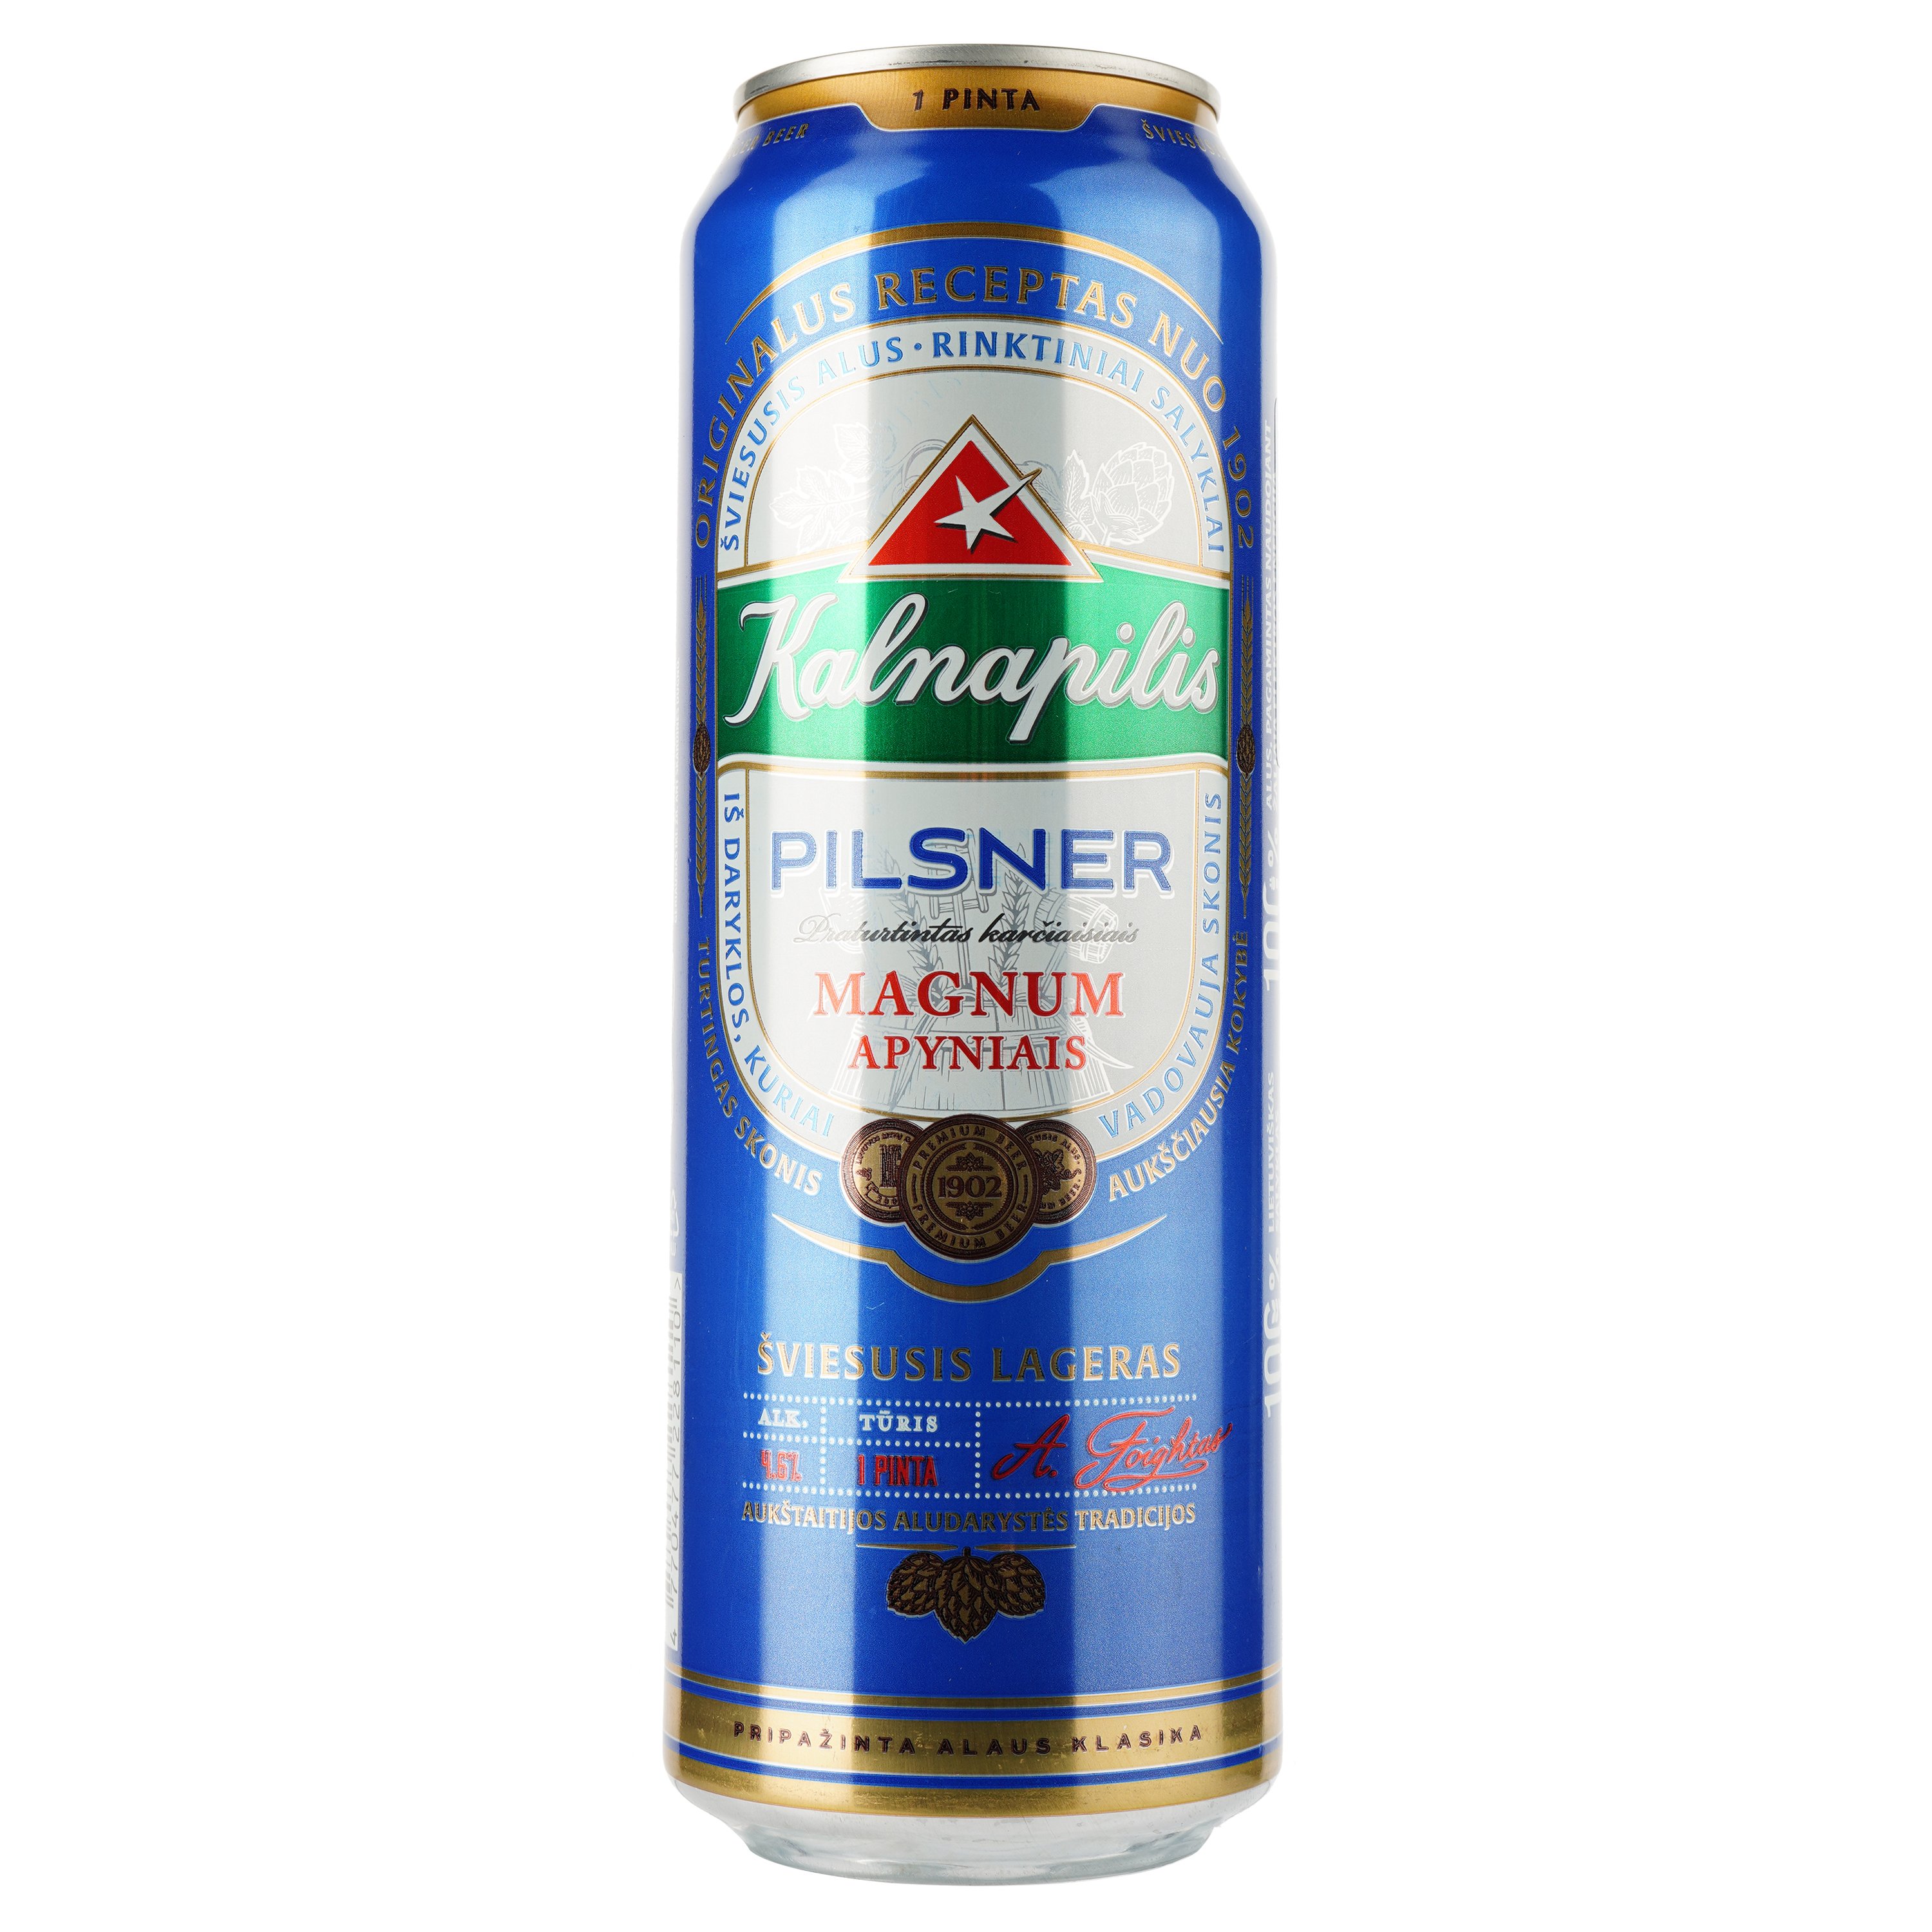 Пиво Kalnapilis Pilsner, світле, фільтроване, 4,6%, з/б, 0,568 л - фото 1